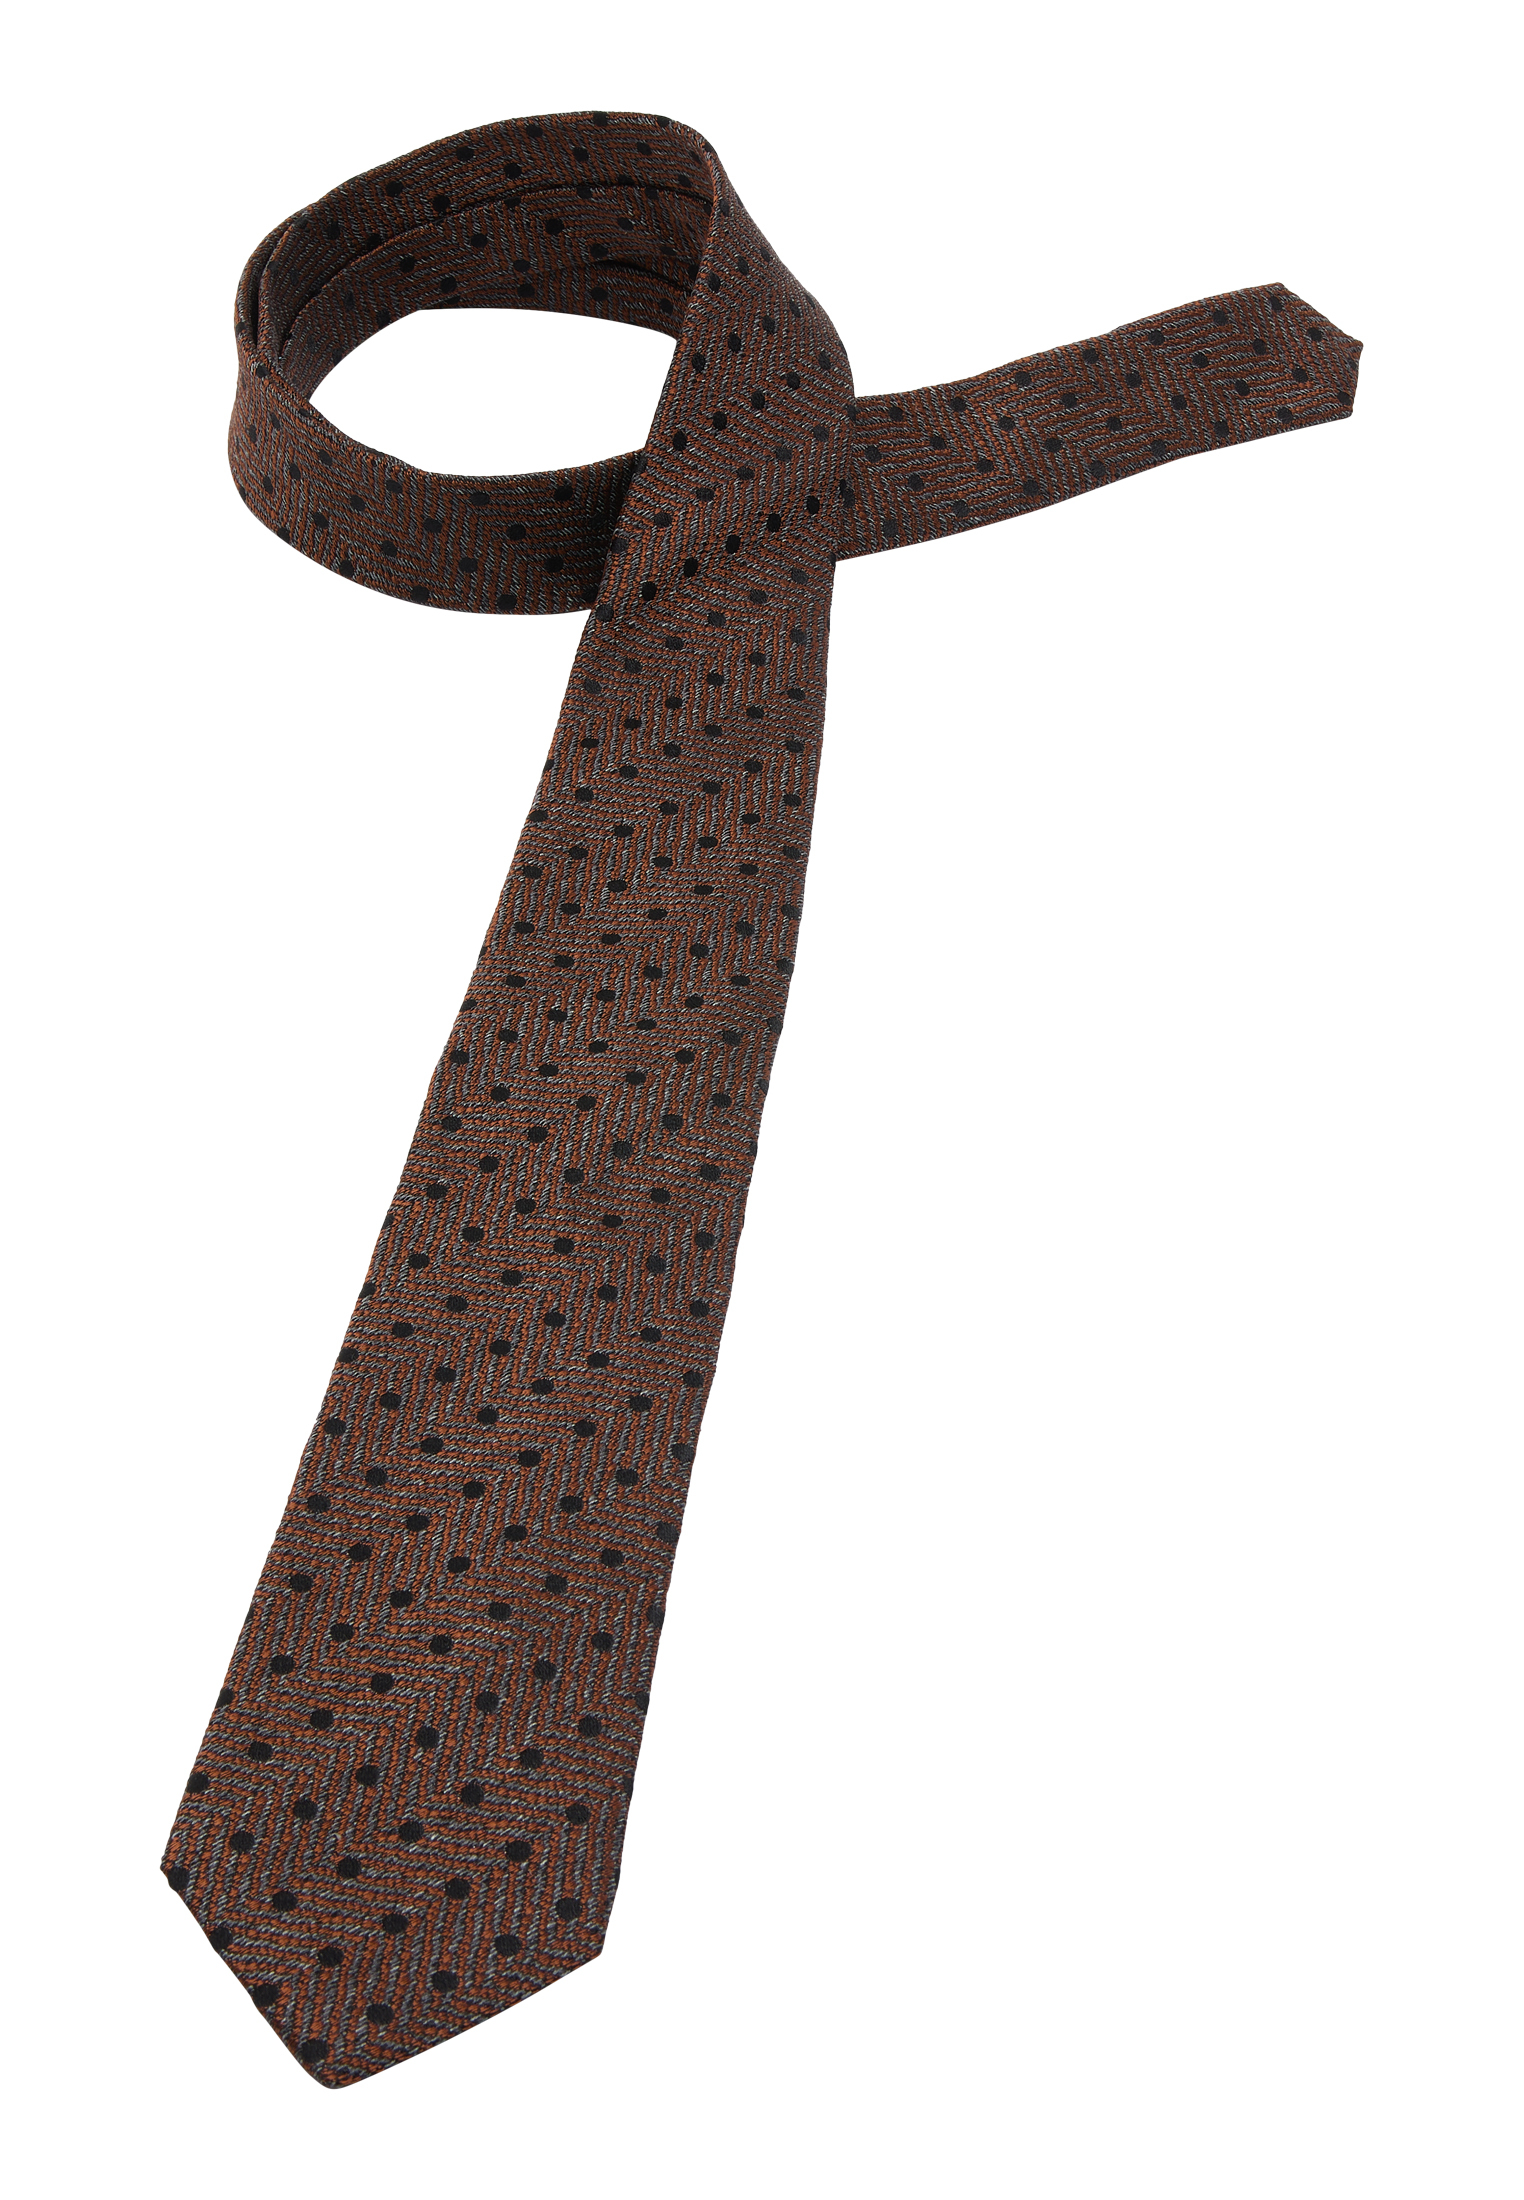 Krawatte in braun strukturiert | braun | 142 | 1AC01933-02-91-142